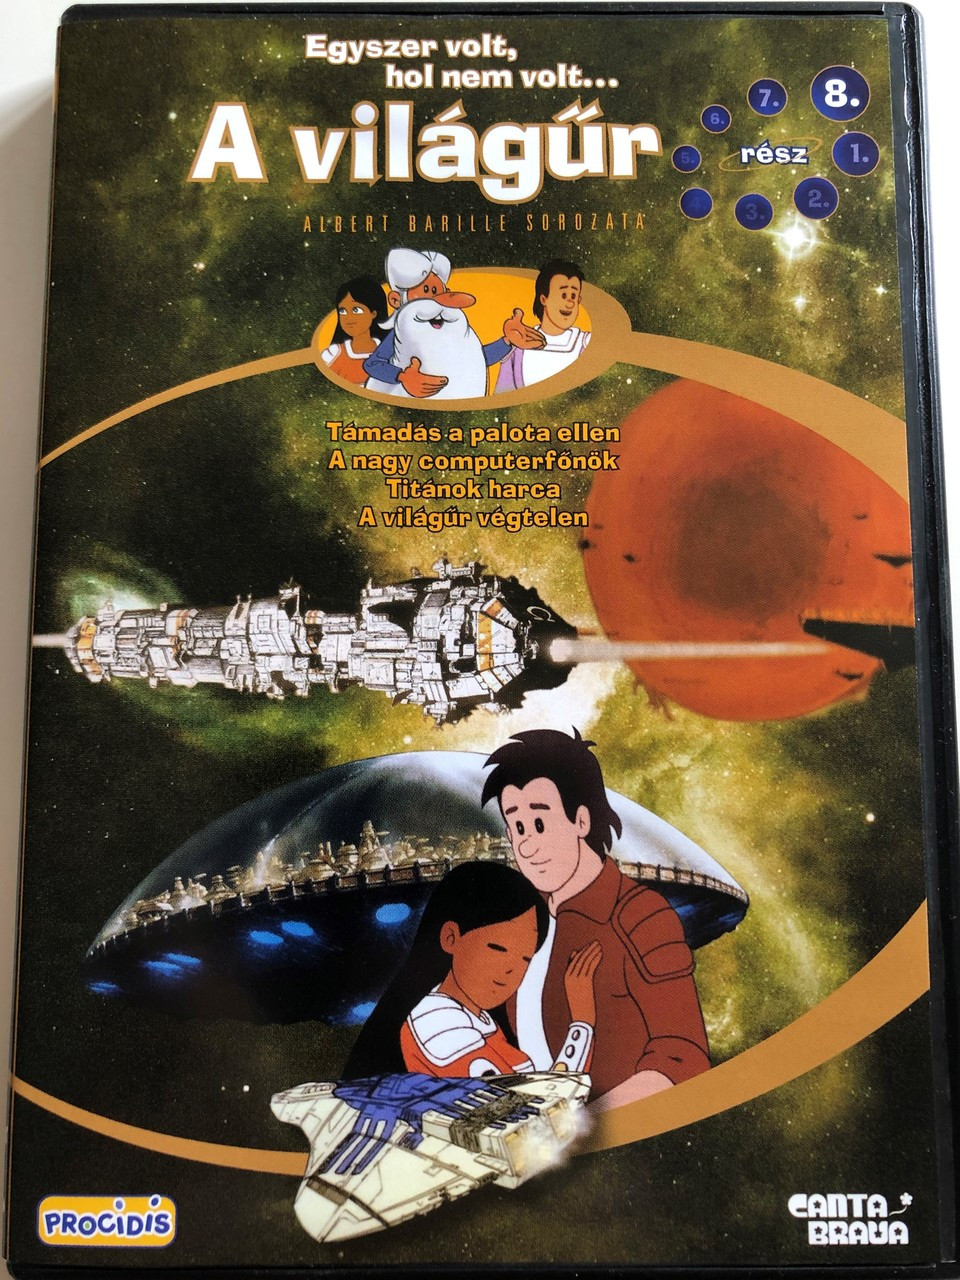 Il était une fois... l'espace DVD 1982 Egyszer volt, hol nem volt... A  világűr (Once upon a time... Space) / Directed by Albert Barillé / 8. rész  / Part 8. / Episodes 23-26 / Educational animated series - bibleinmylanguage